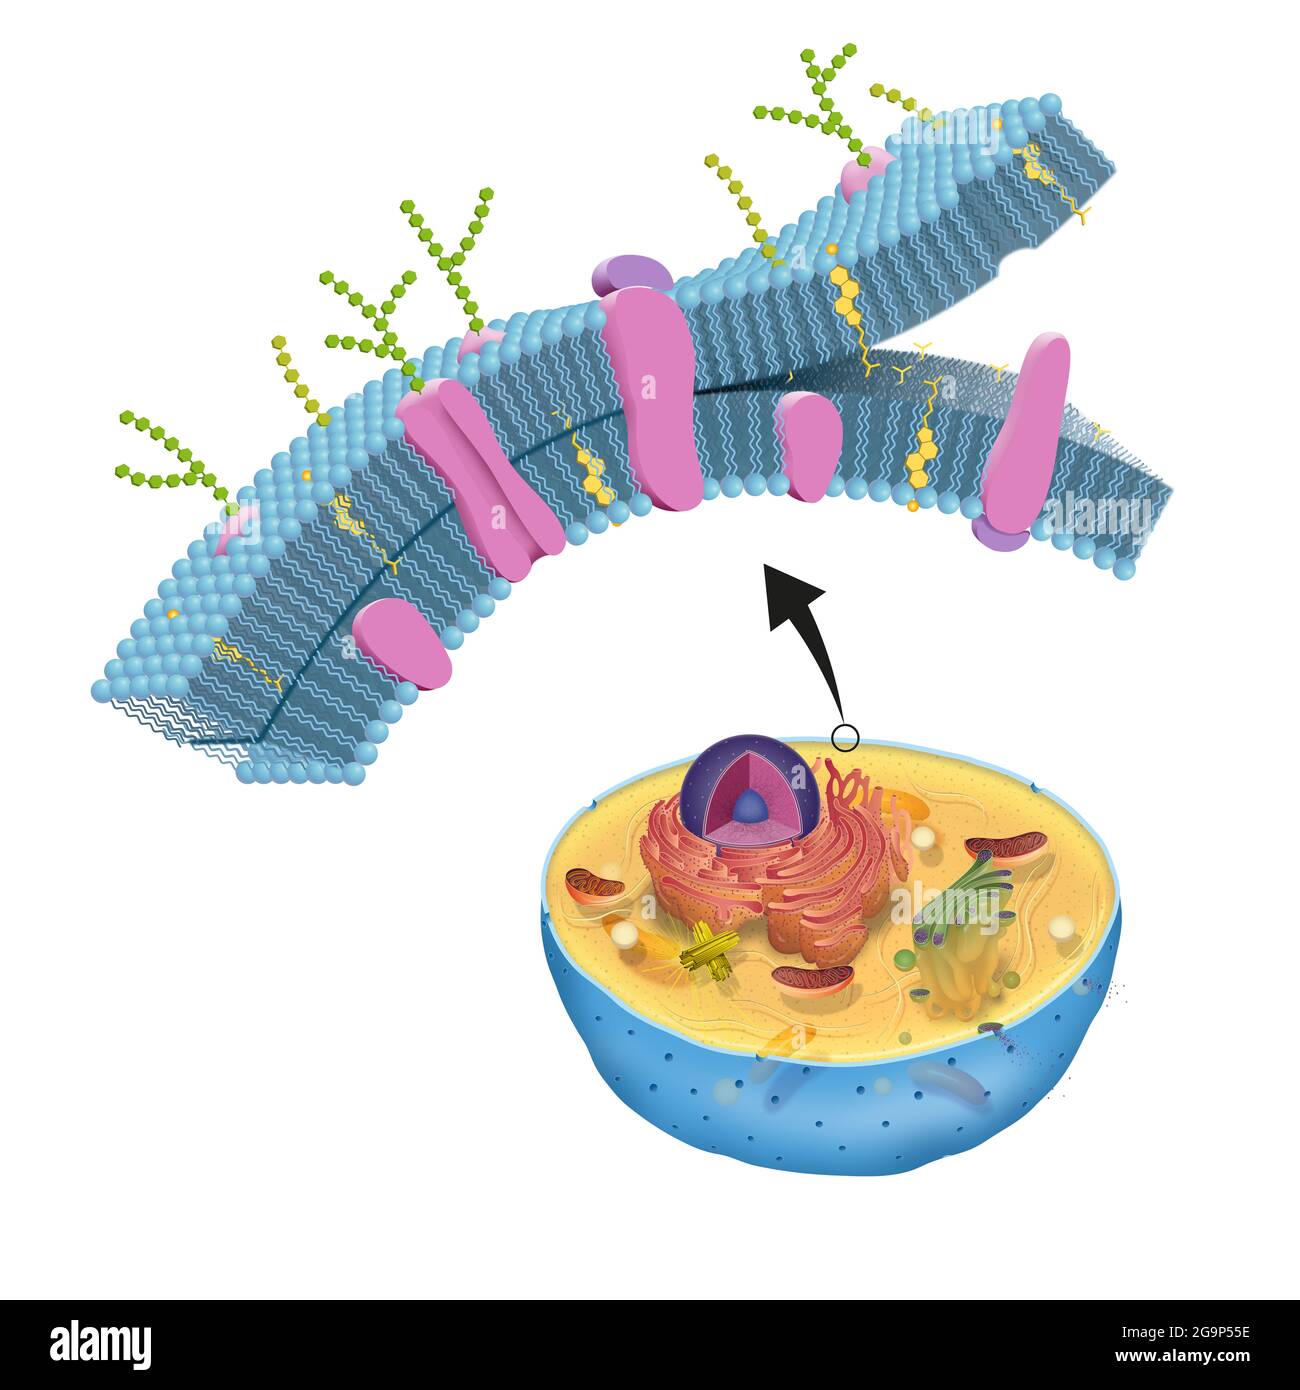 La membrana celular, también llamada membrana plasmática, se encuentra en todas las células y separa el interior de la célula del ambiente exterior Foto de stock